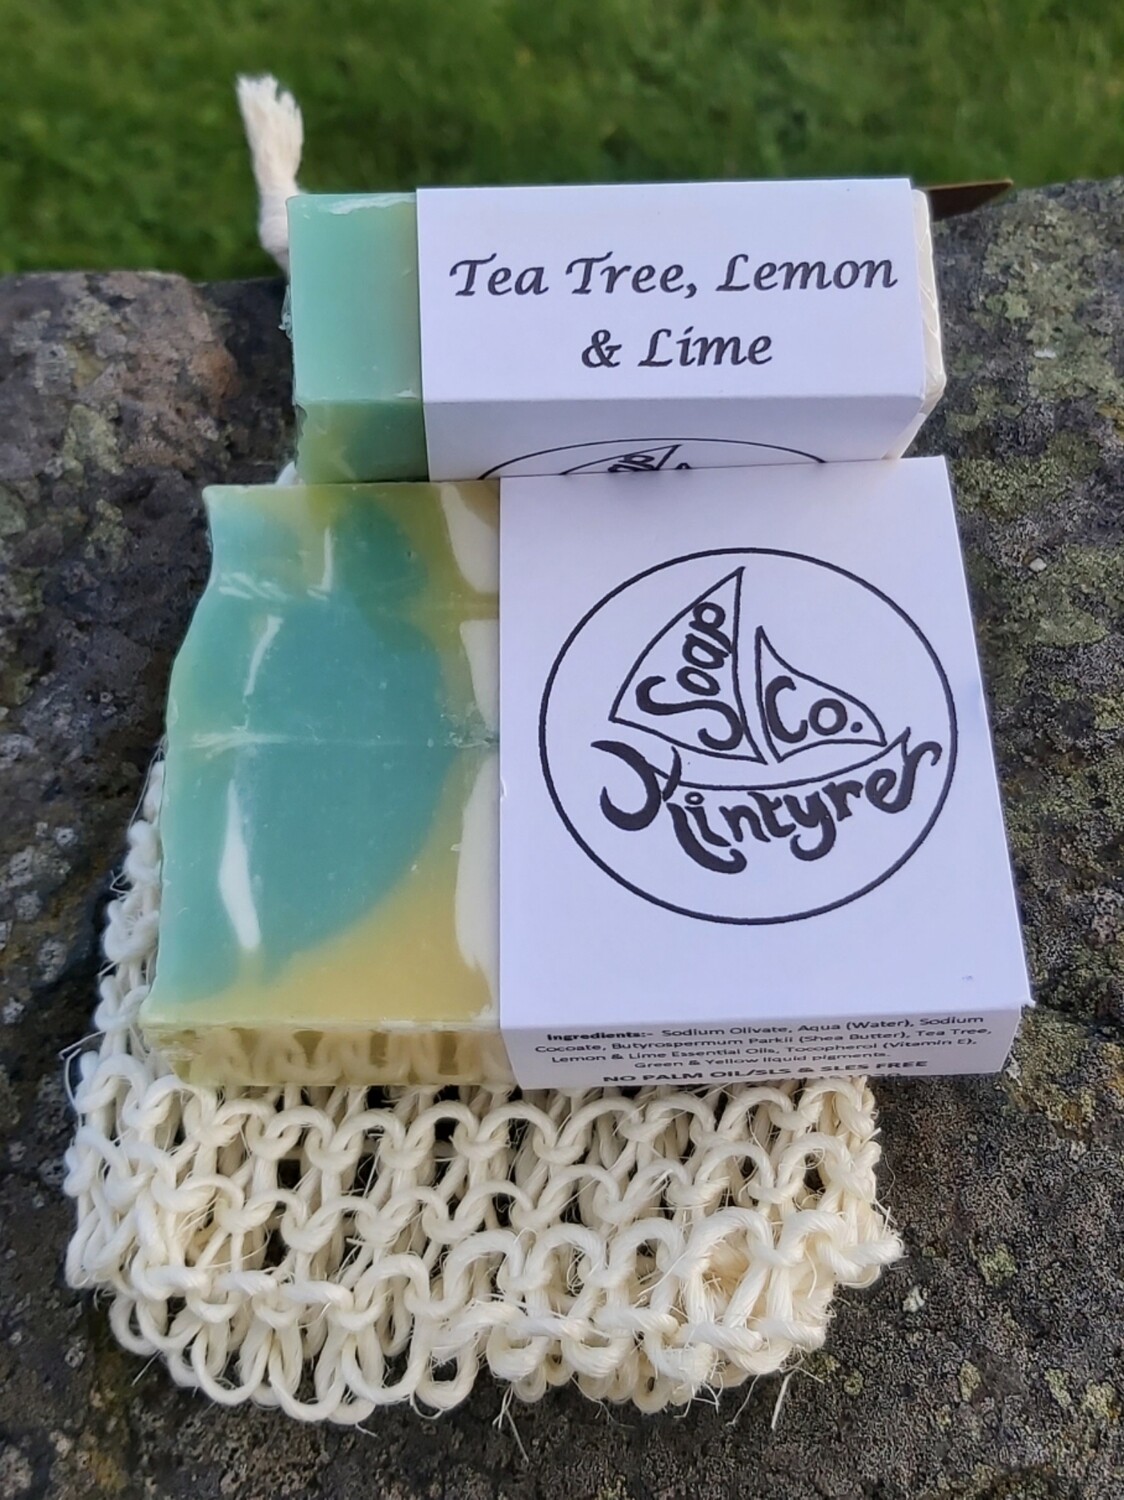 Tea tree, Lemon & Lime